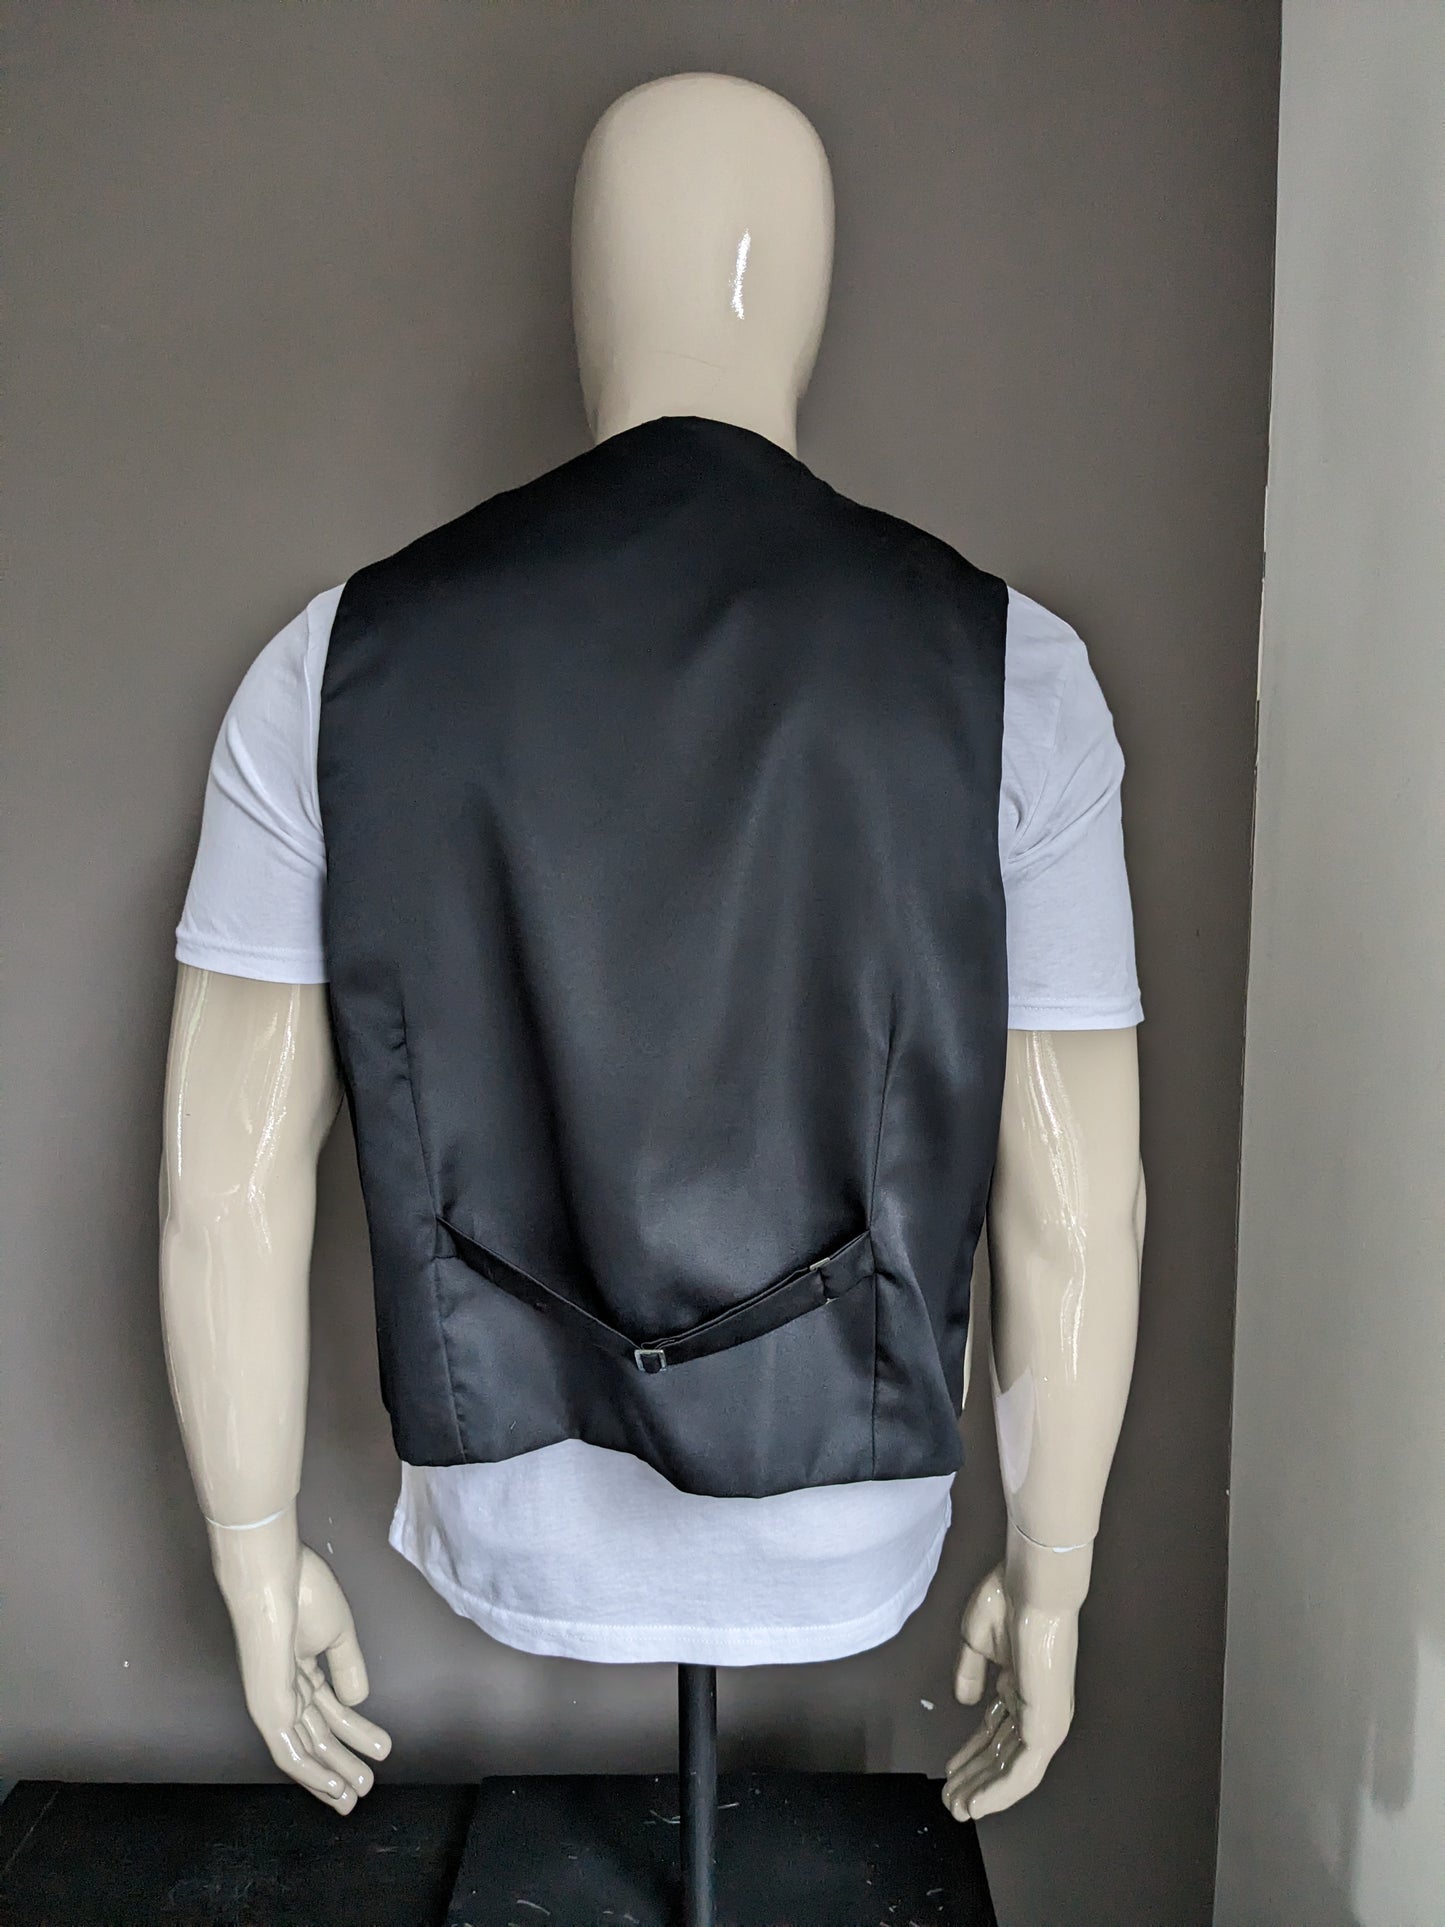 FH waistcoat. Beige motif. Black back. Size XL.